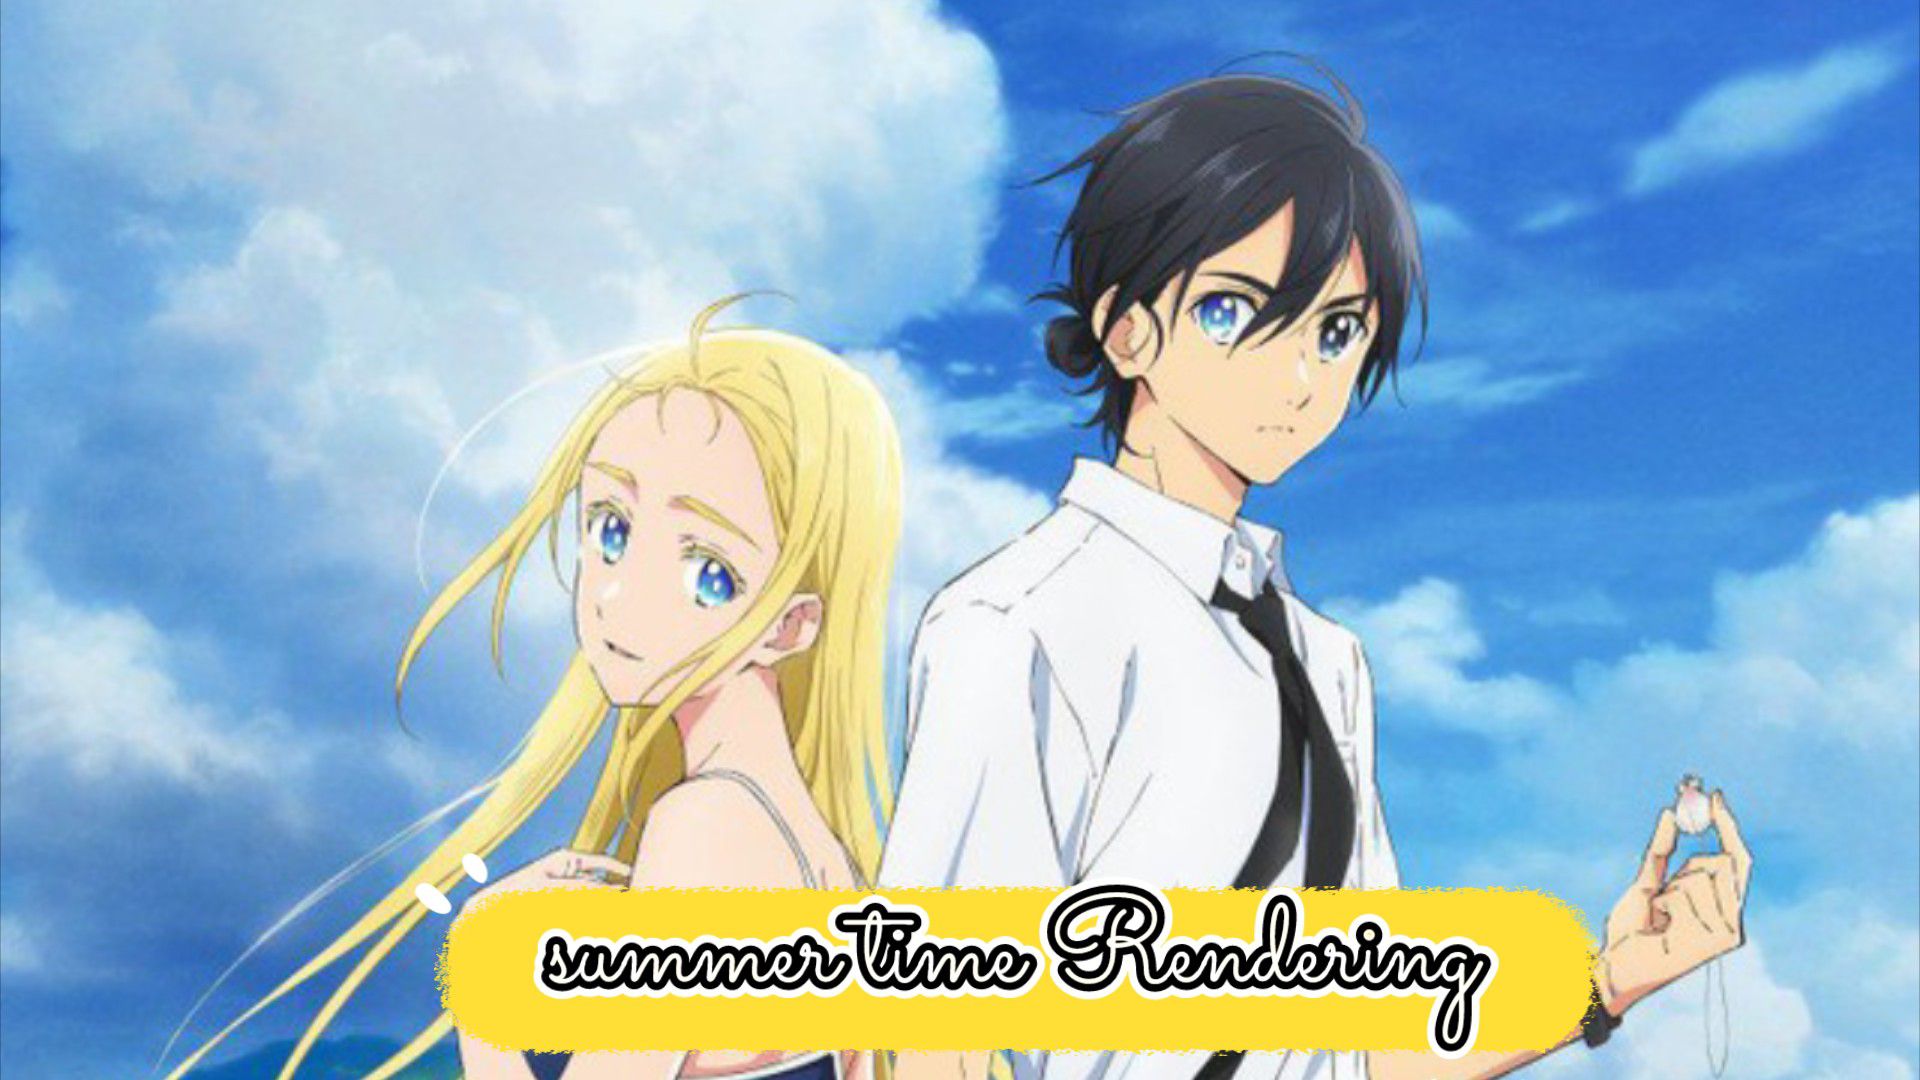 Assistir Summer Time Rendering - Episódio 11 Online - Download & Assistir  Online! - AnimesTC